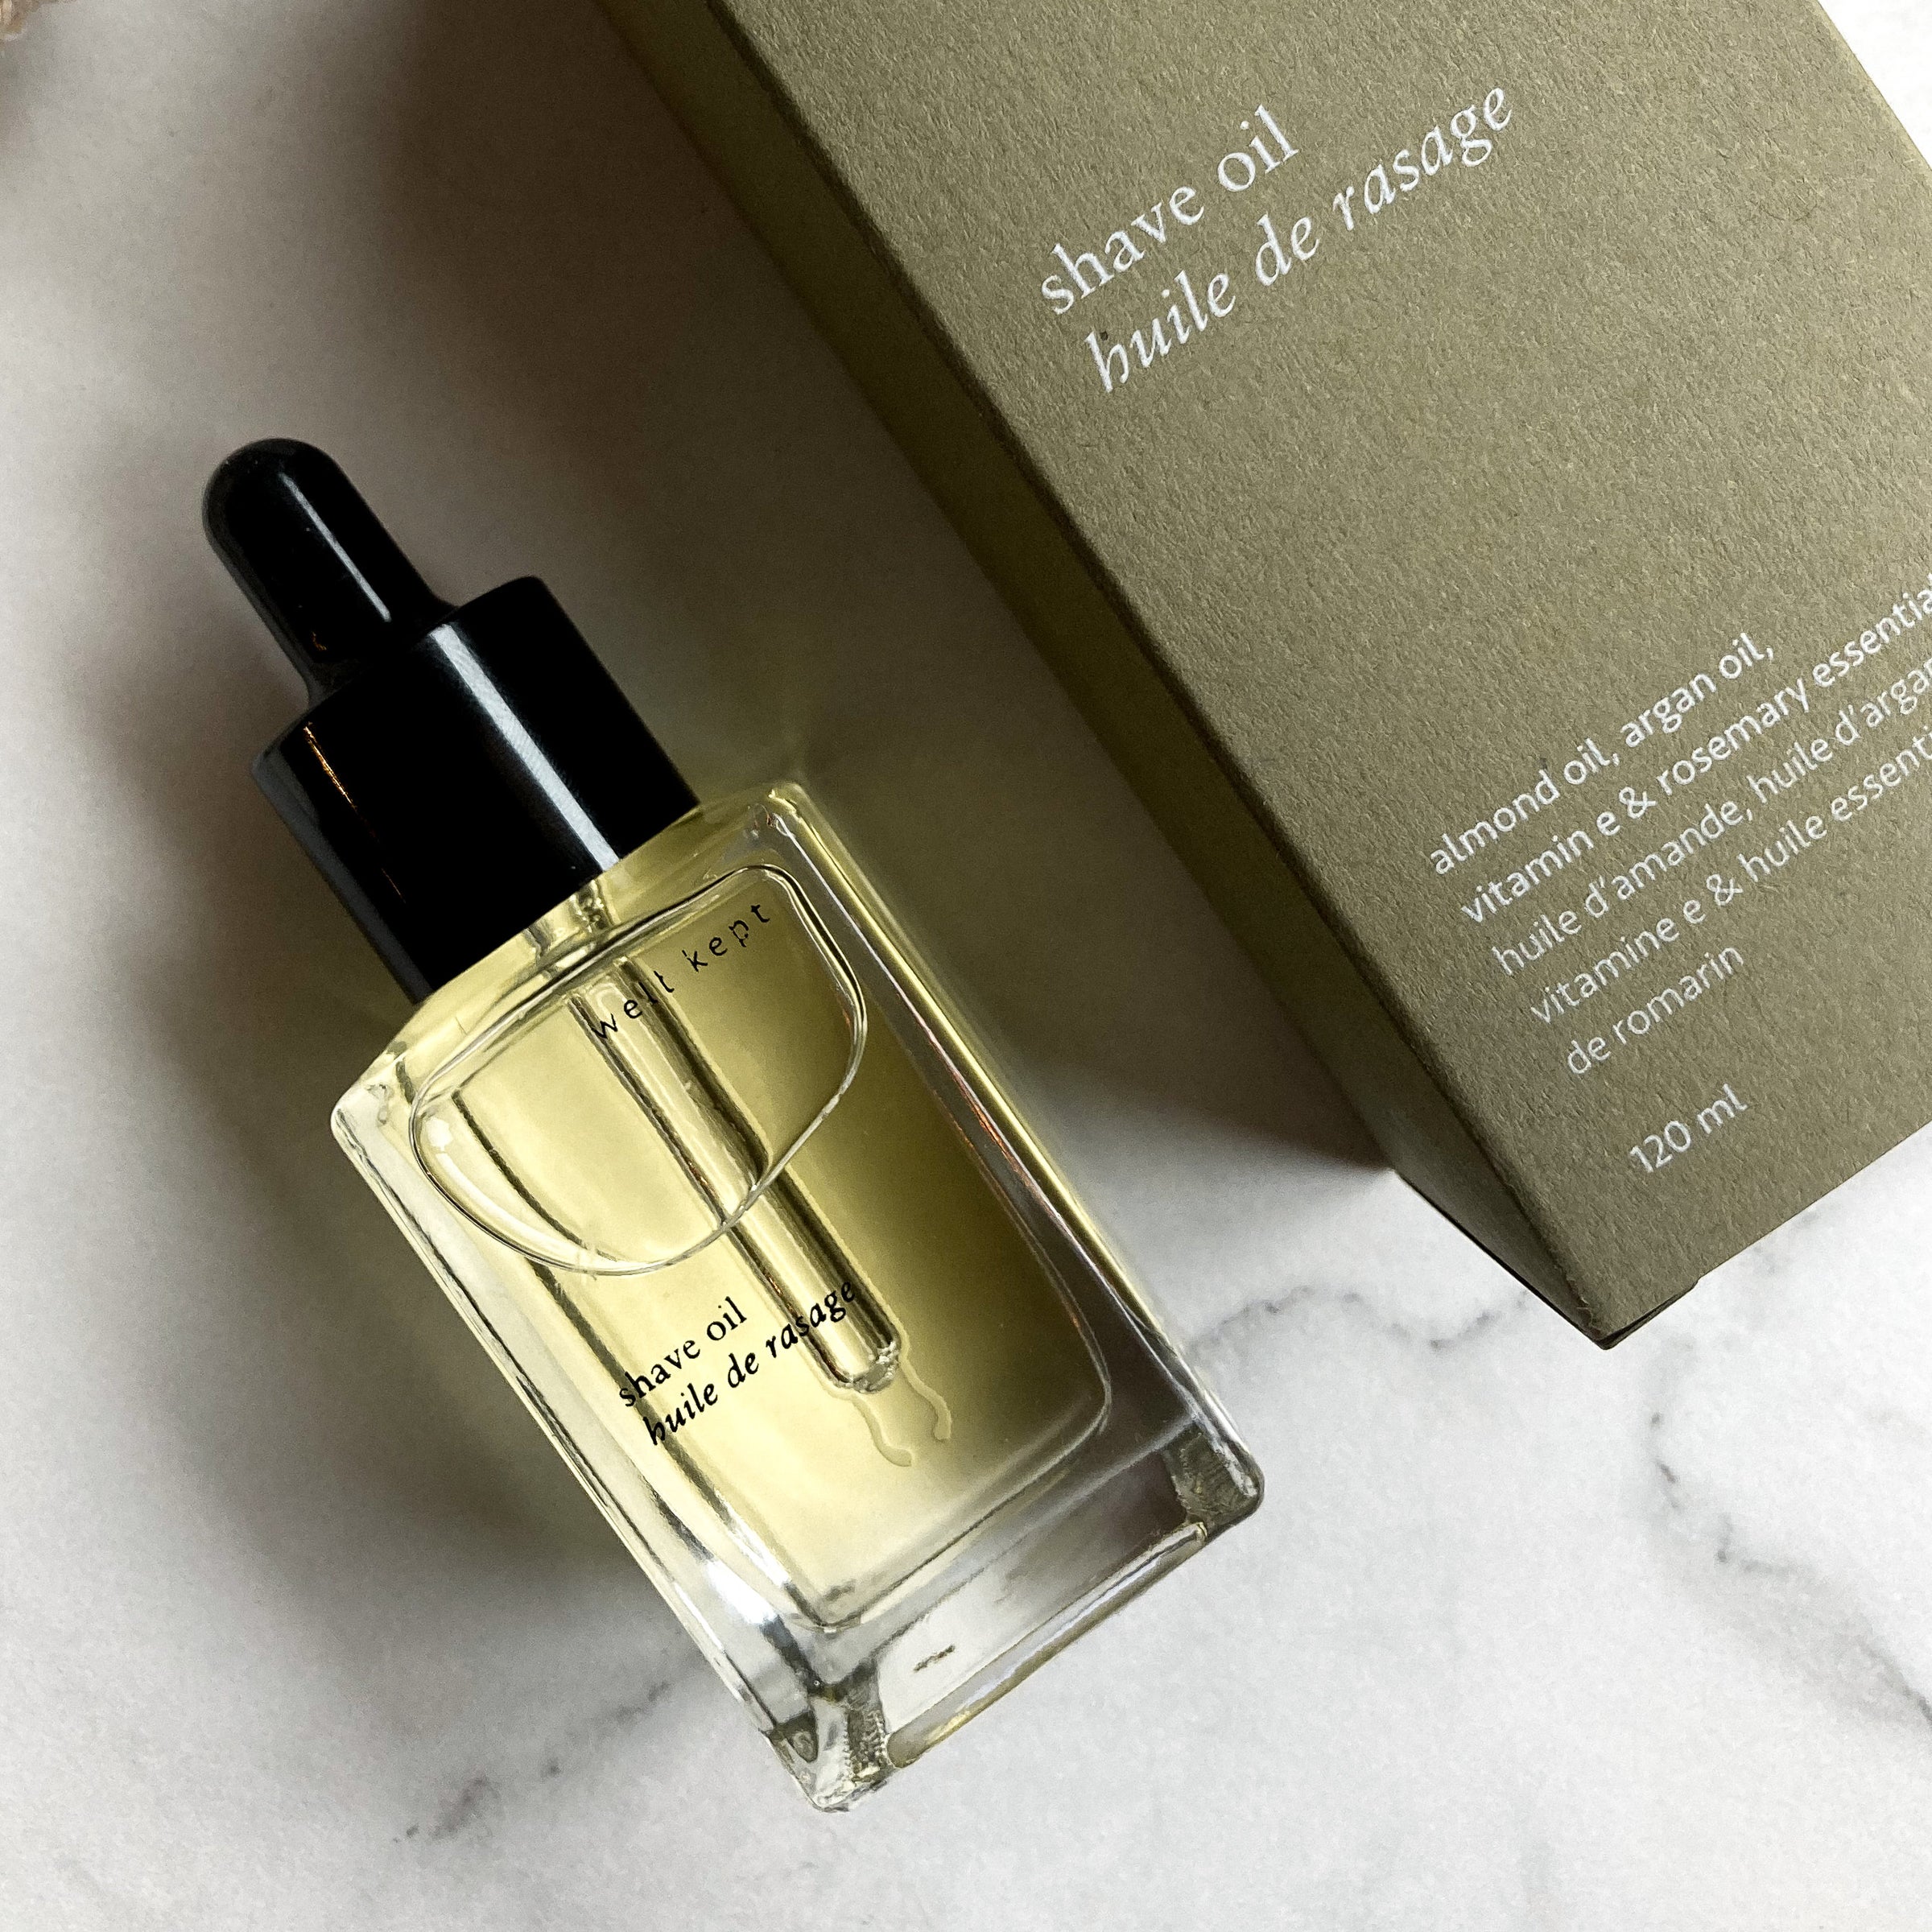 PARFUM BOTANIQUE  Botanical Oil Perfume Sample Set – Lvnea Perfume